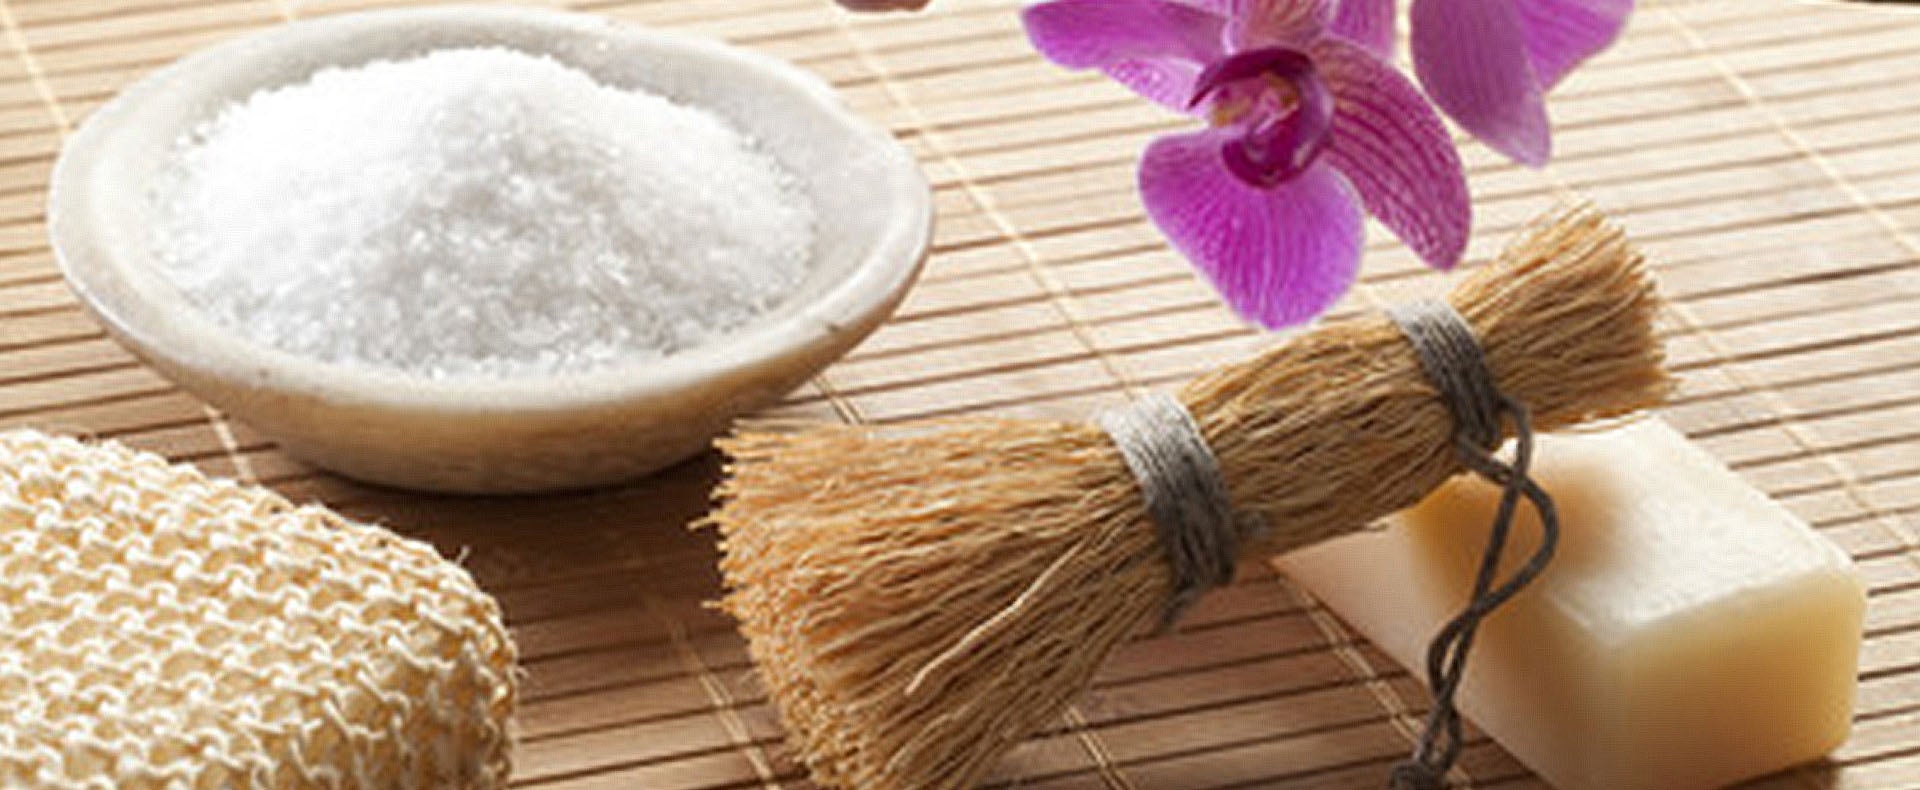 Epsom Salt: What Is a Substitute for Epsom Salt? - Salt Library